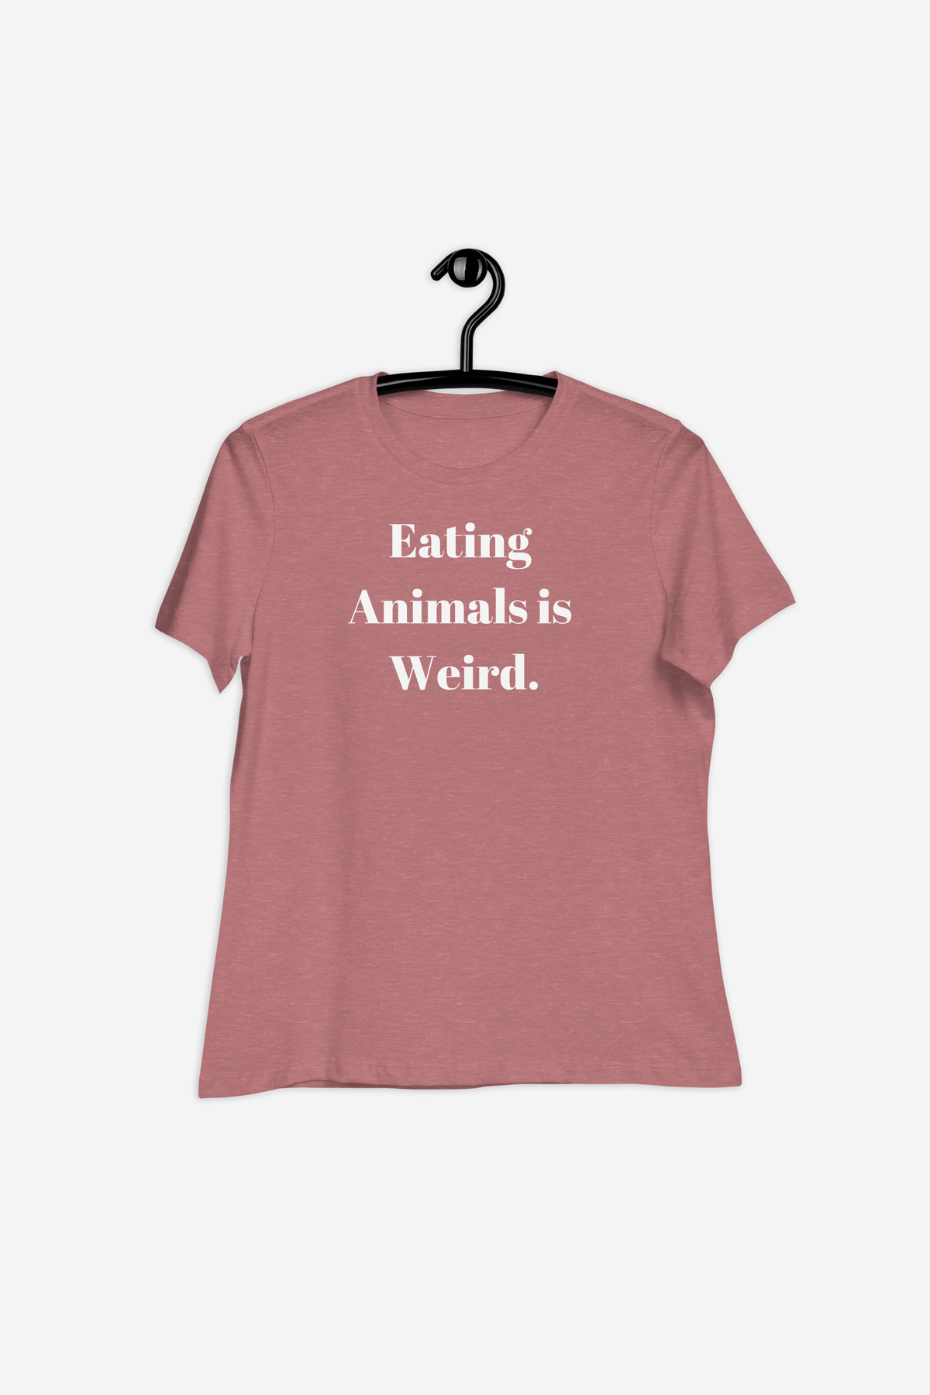 Eating Animals Is Weird Women's Relaxed T-Shirt